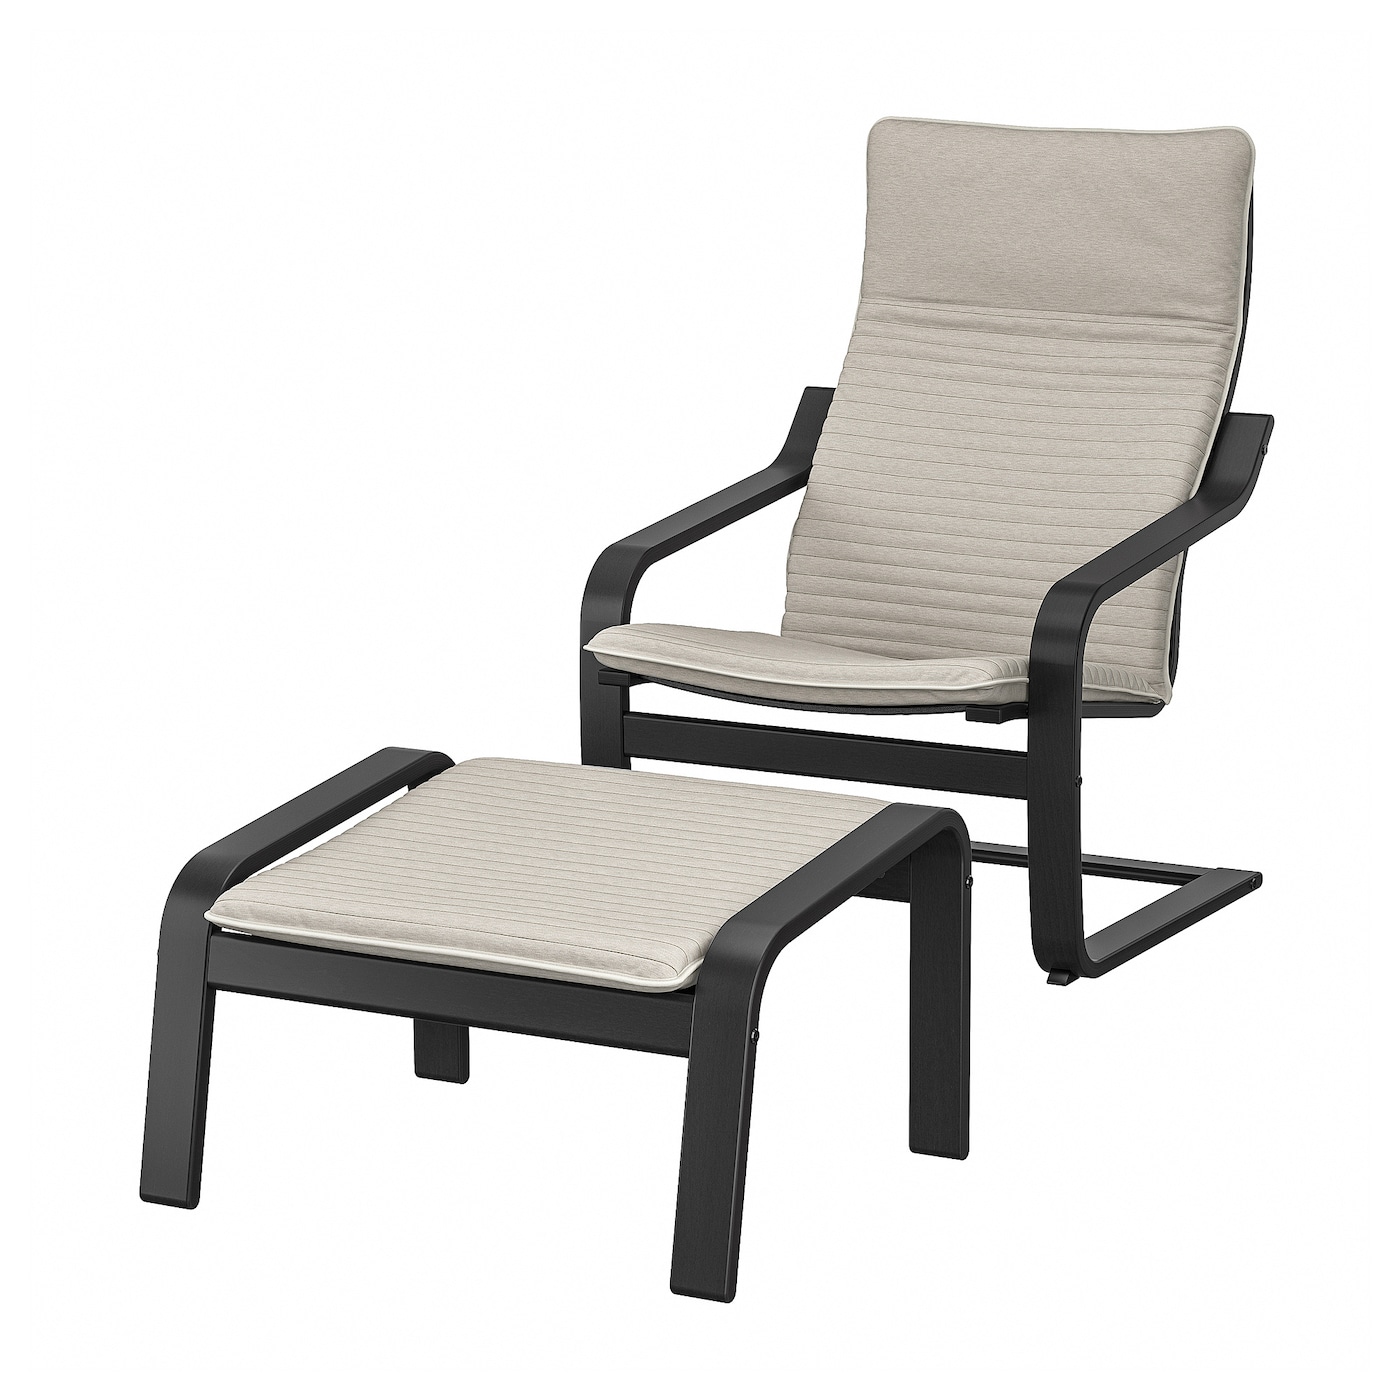 Кресло-качалка - POÄNG / POАNG IKEA/  ПОЭНГ ИКЕА,  72х62 см, светло-бежевый